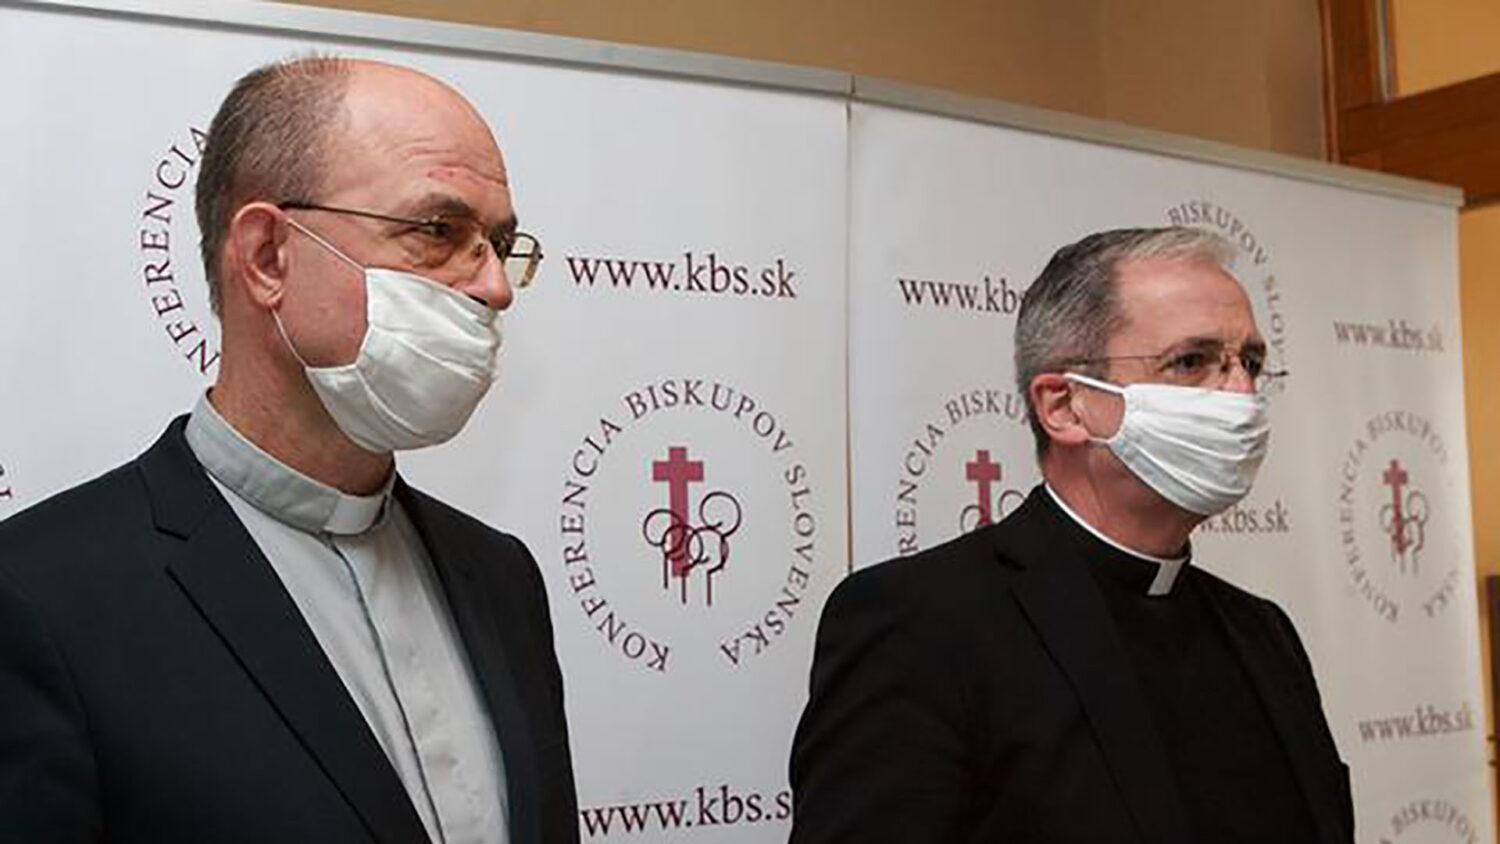 Biskupi zrušili dišpenz od povinnej účasti na nedeľných svätých omšiach